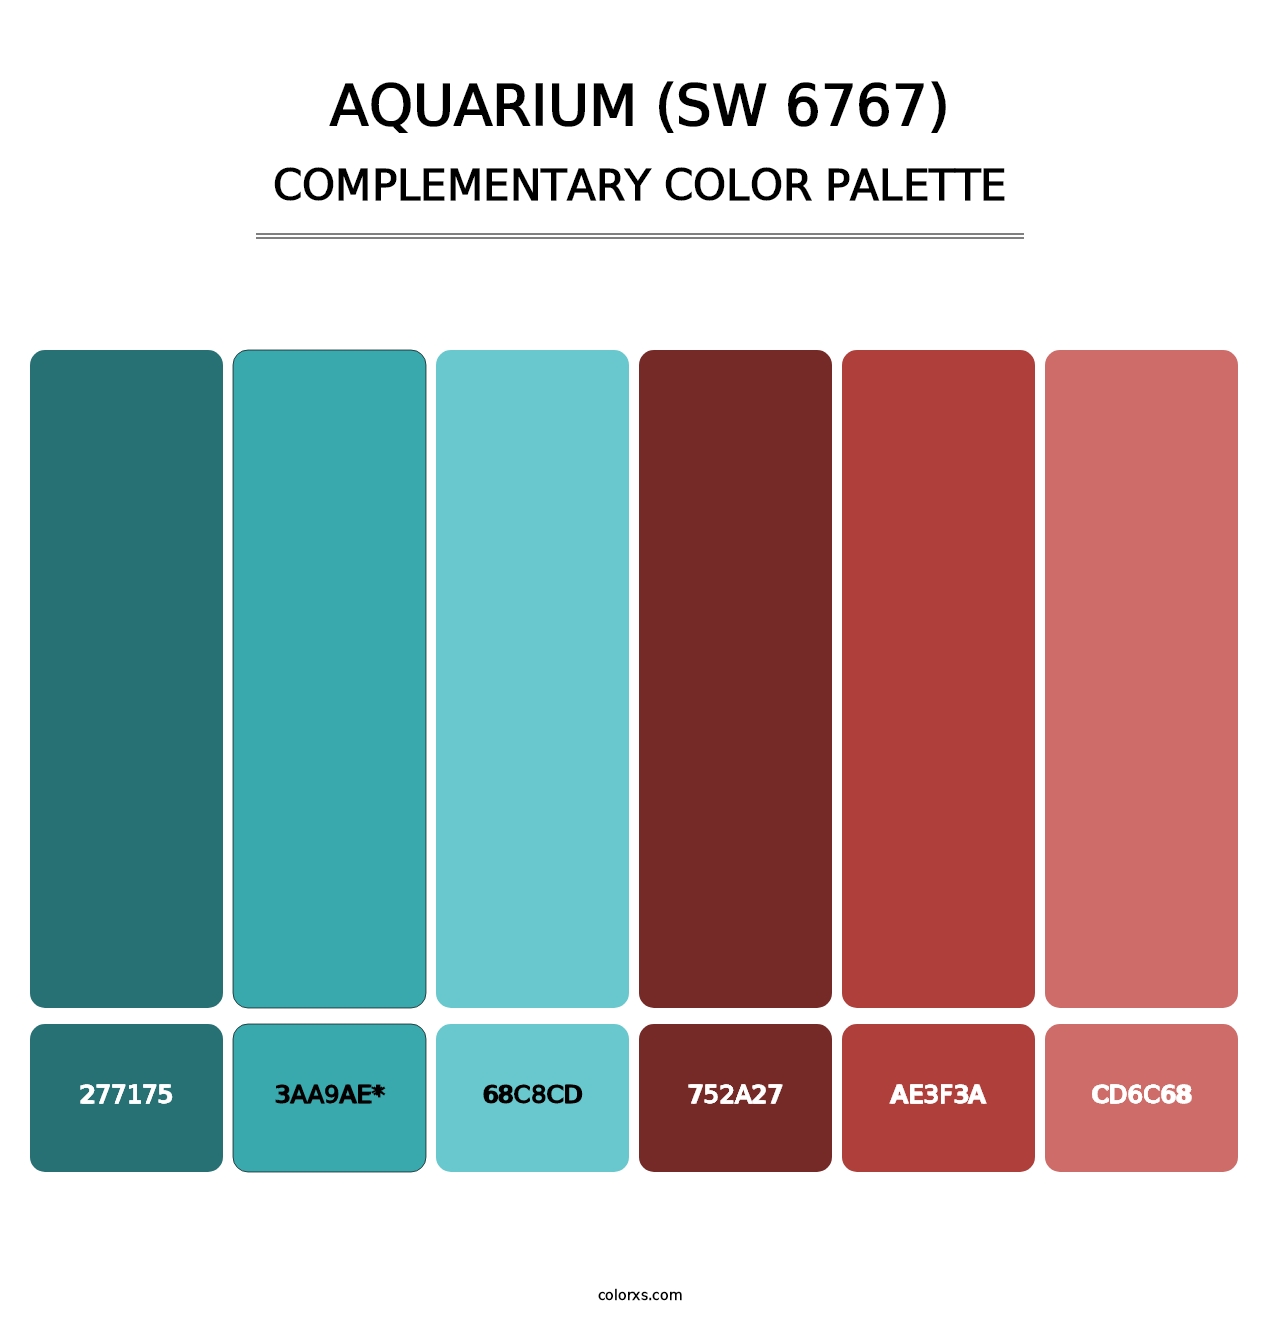 Aquarium (SW 6767) - Complementary Color Palette